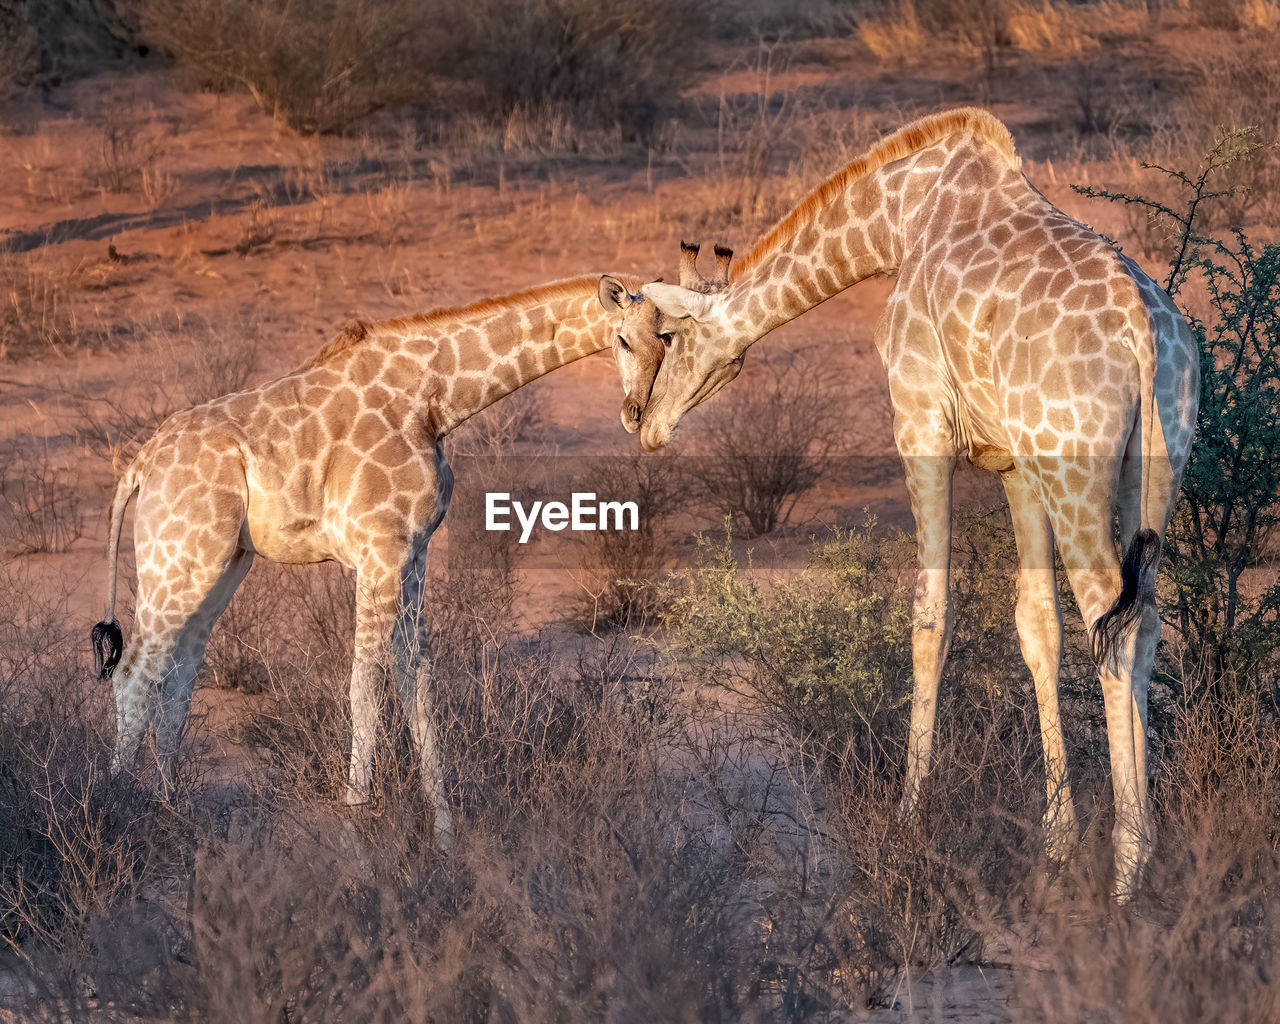 Giraffes head to head 